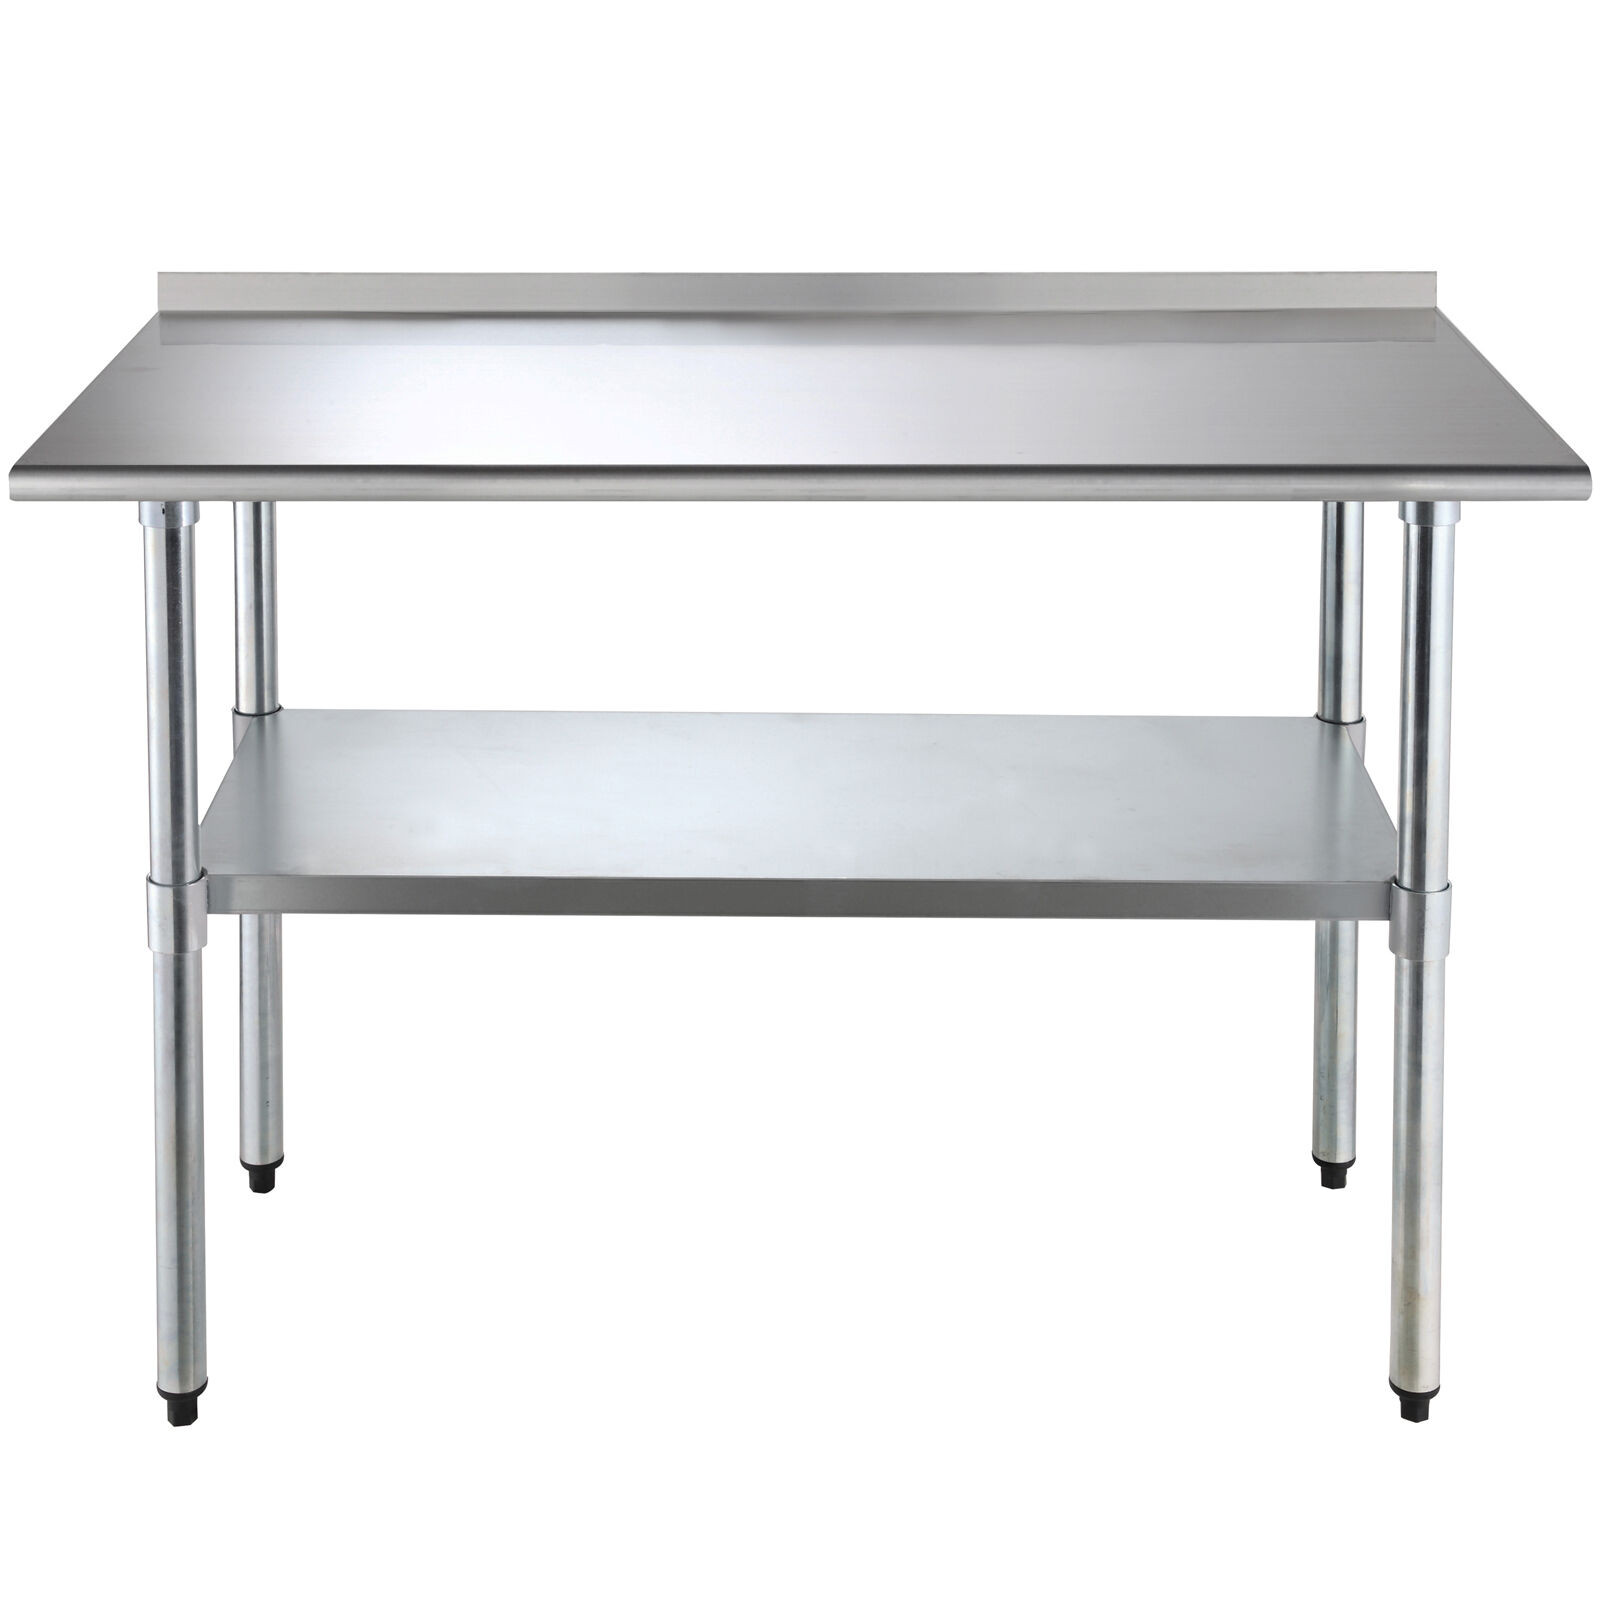 Kitchen Work Tables With Storage
 Stainless Steel Work Prep Table Kitchen Restaurant Storage